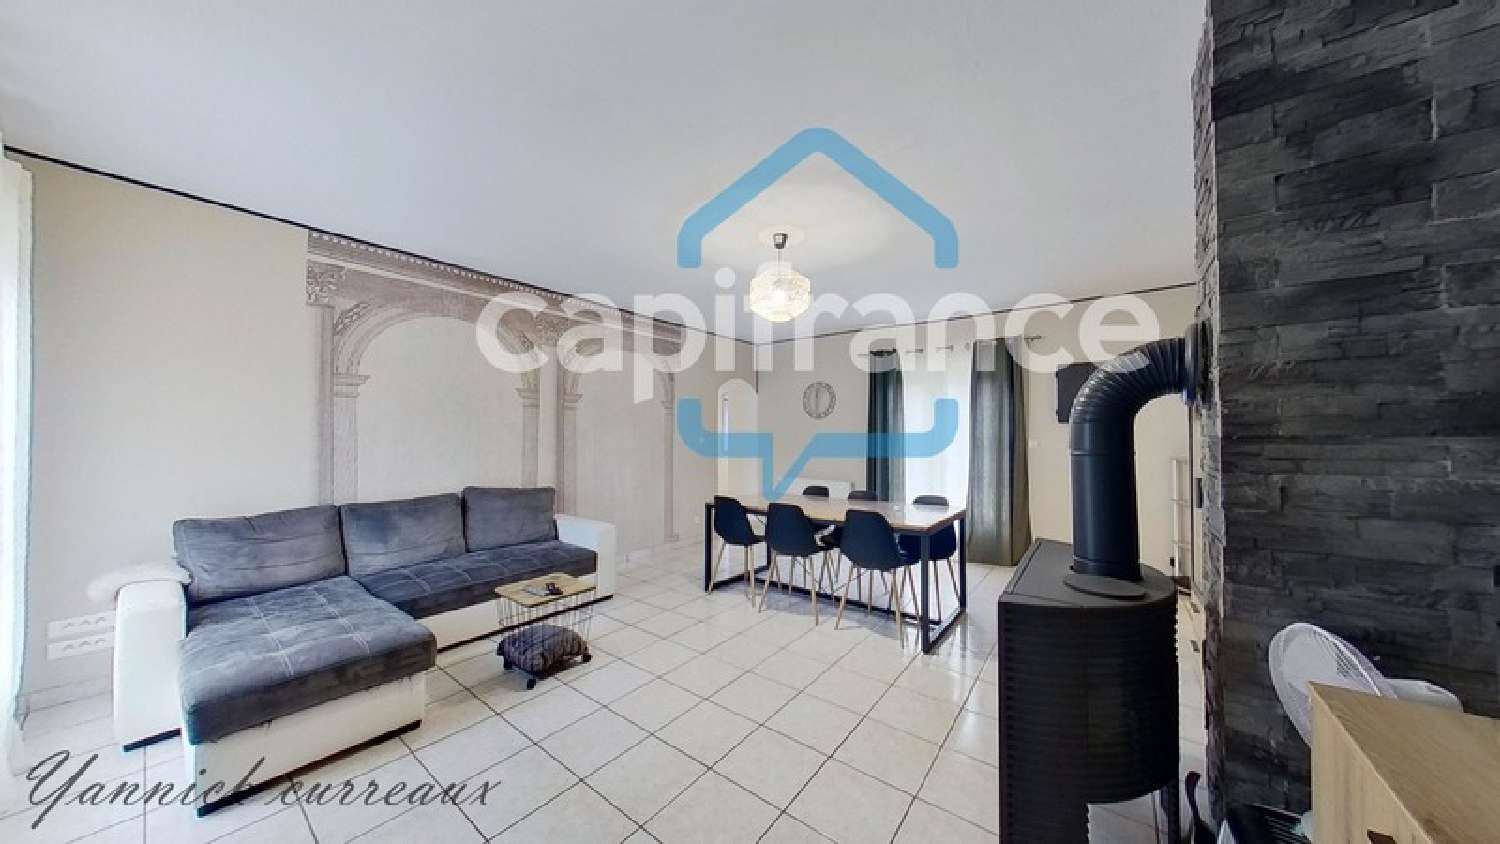  for sale house Abergement-la-Ronce Jura 1